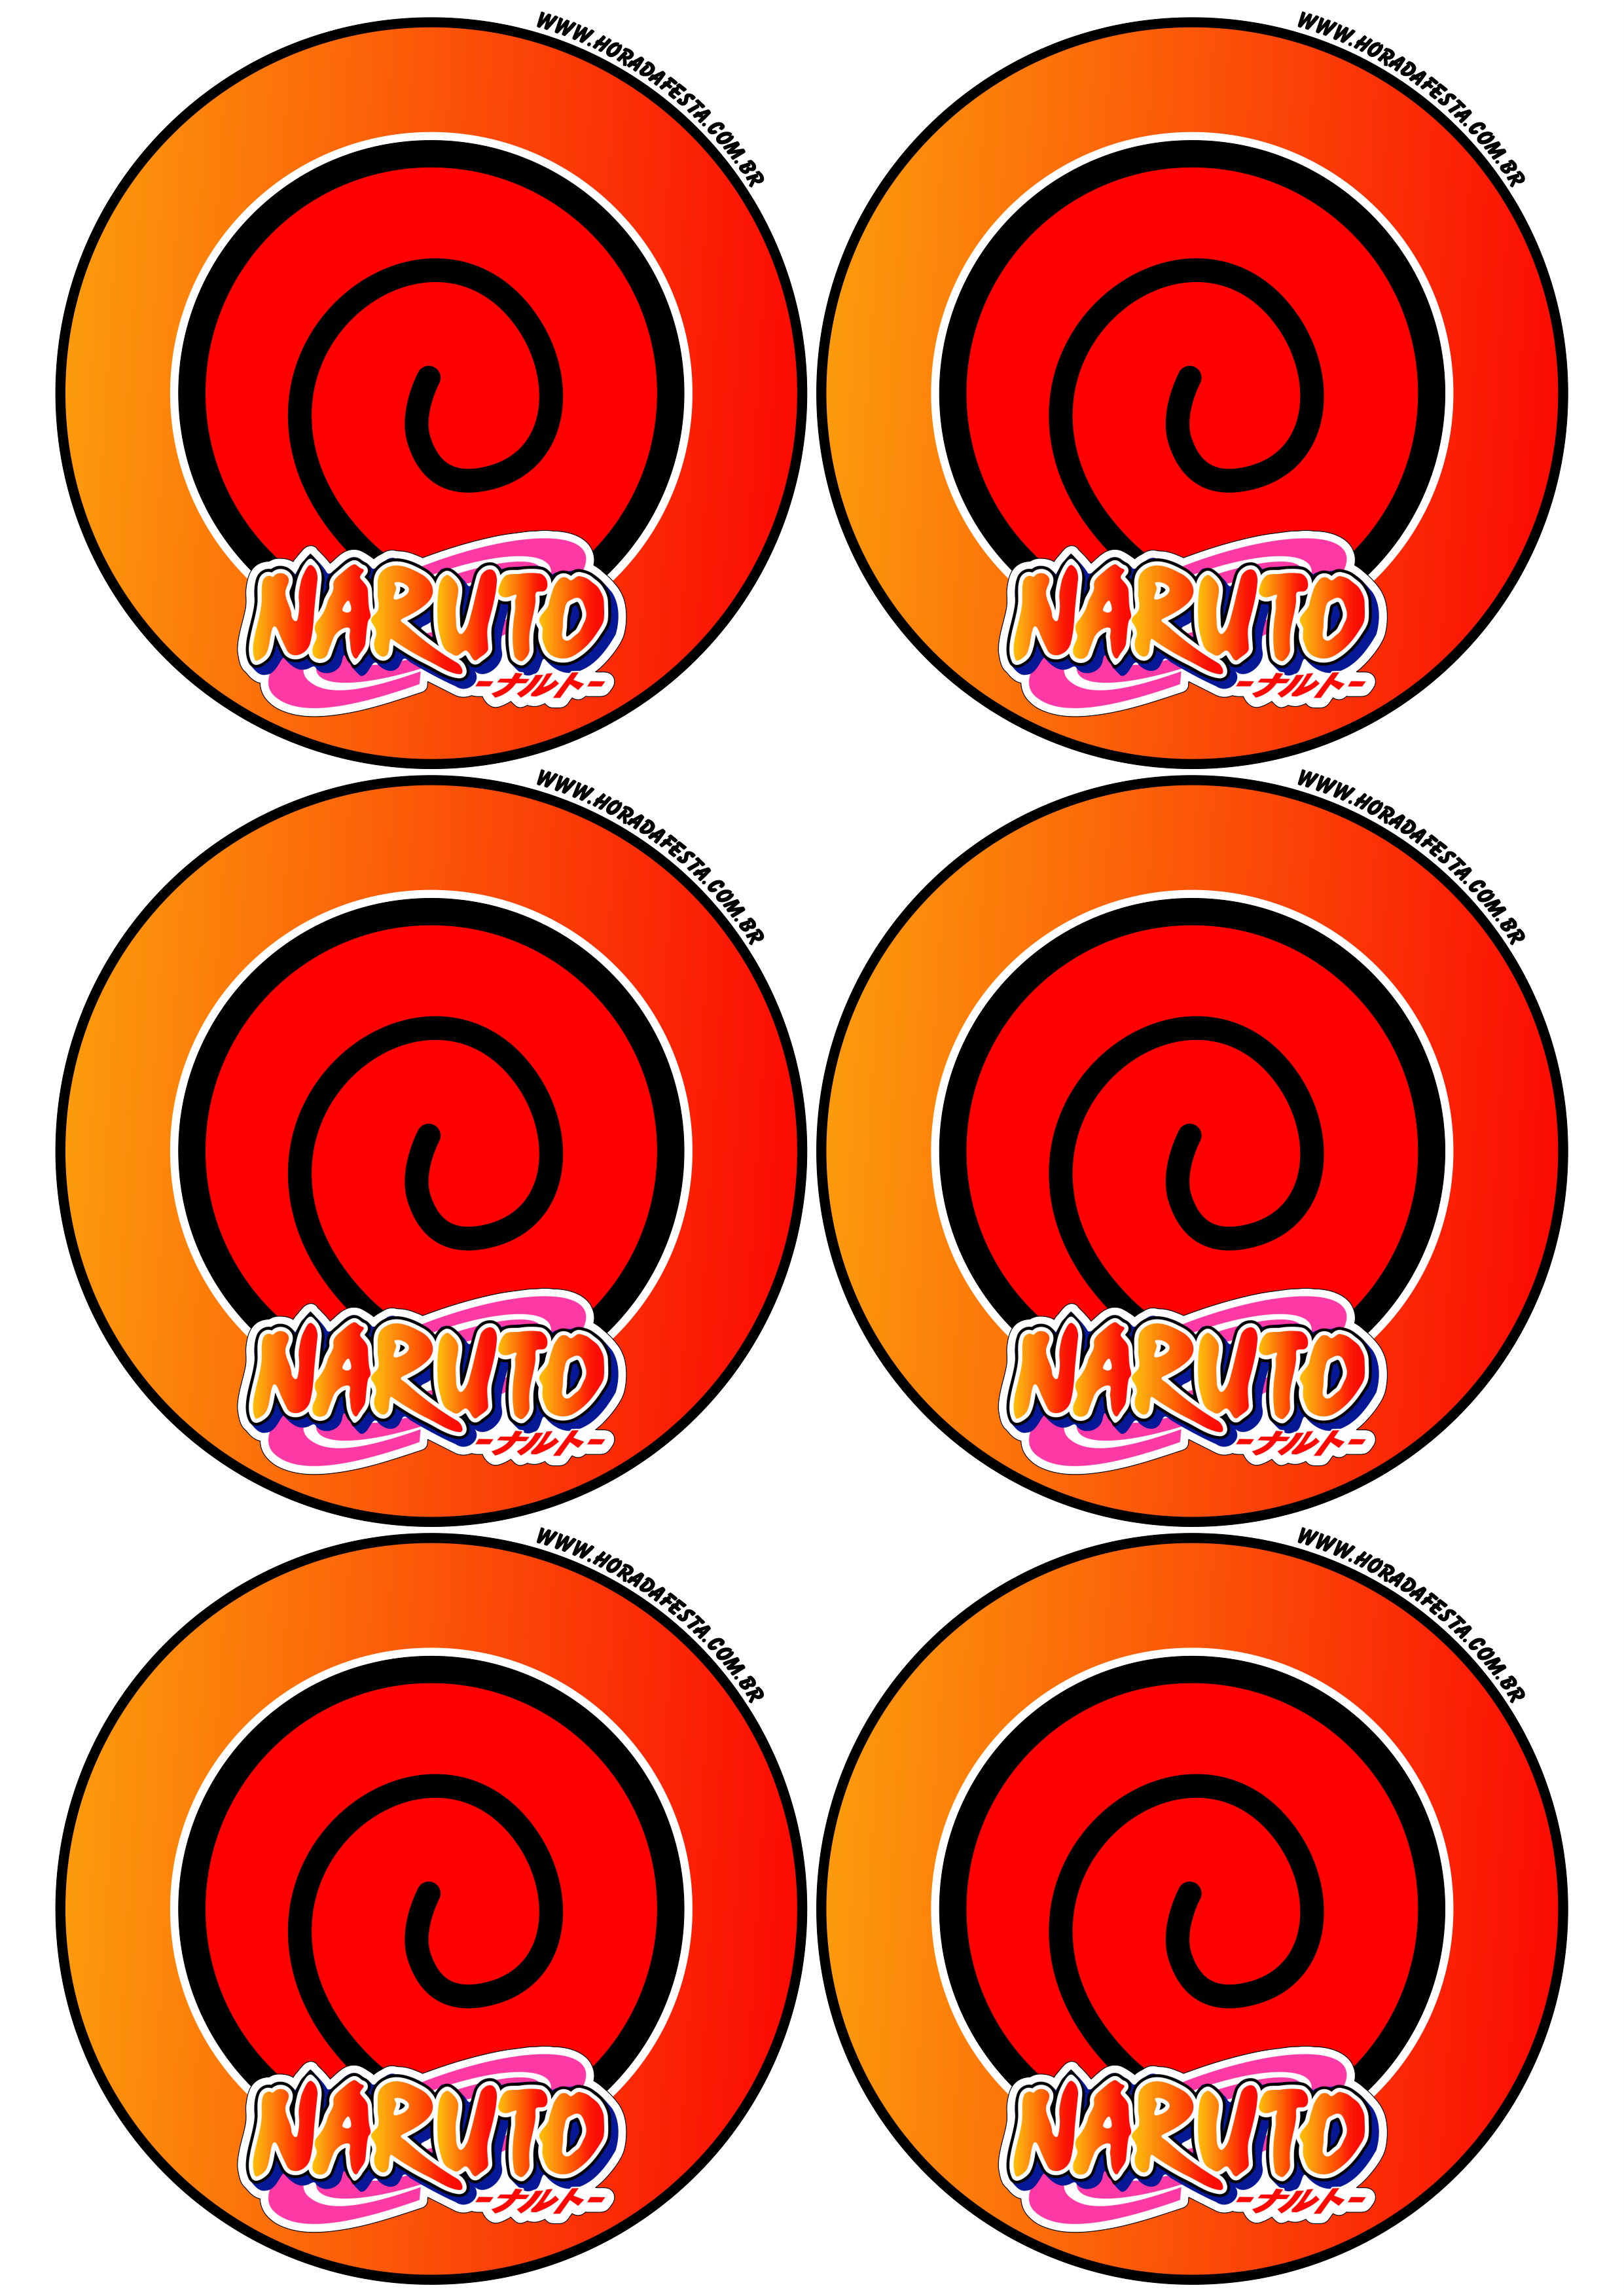 Naruto Shippuden adesivo redondo símbolo clã Uzumaki decoração de festas artigos de papelaria tag sticker 6 imagens png